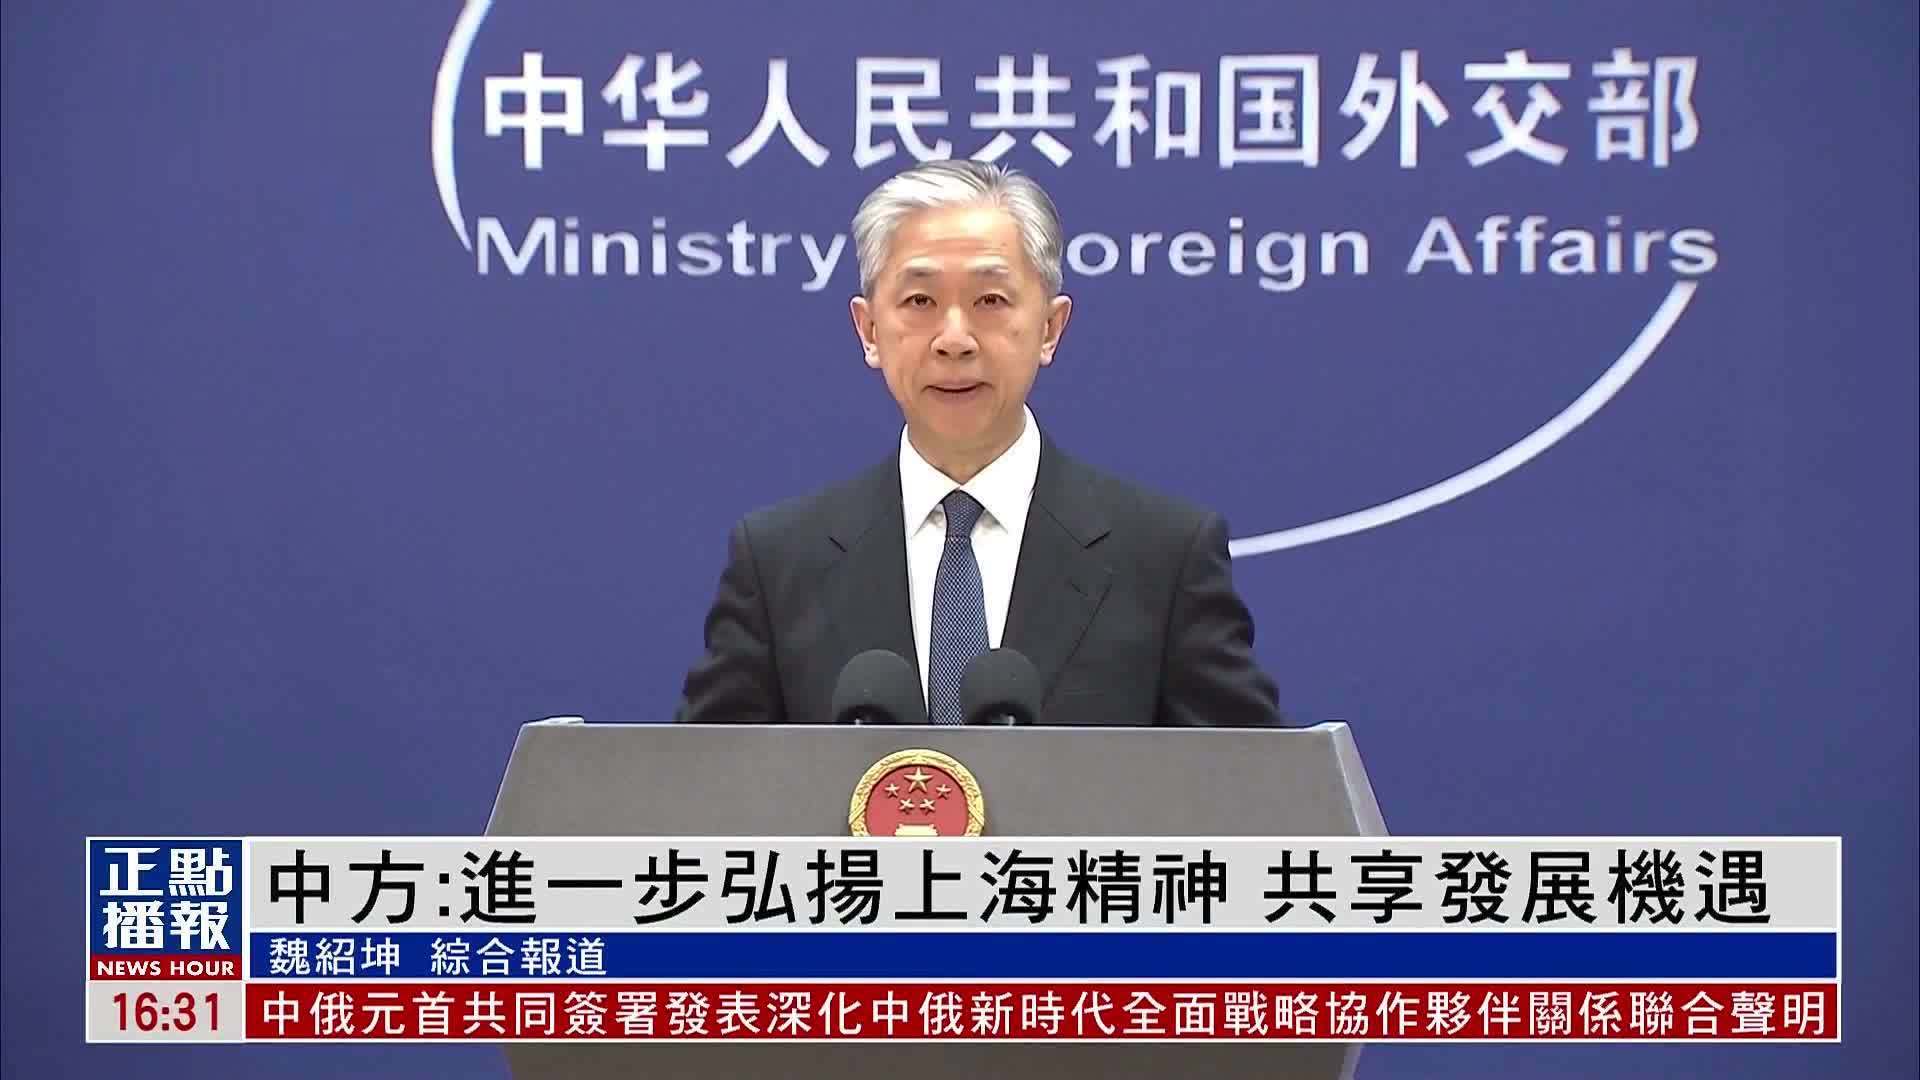 中国外交部进一步弘扬上海精神共享发展机遇